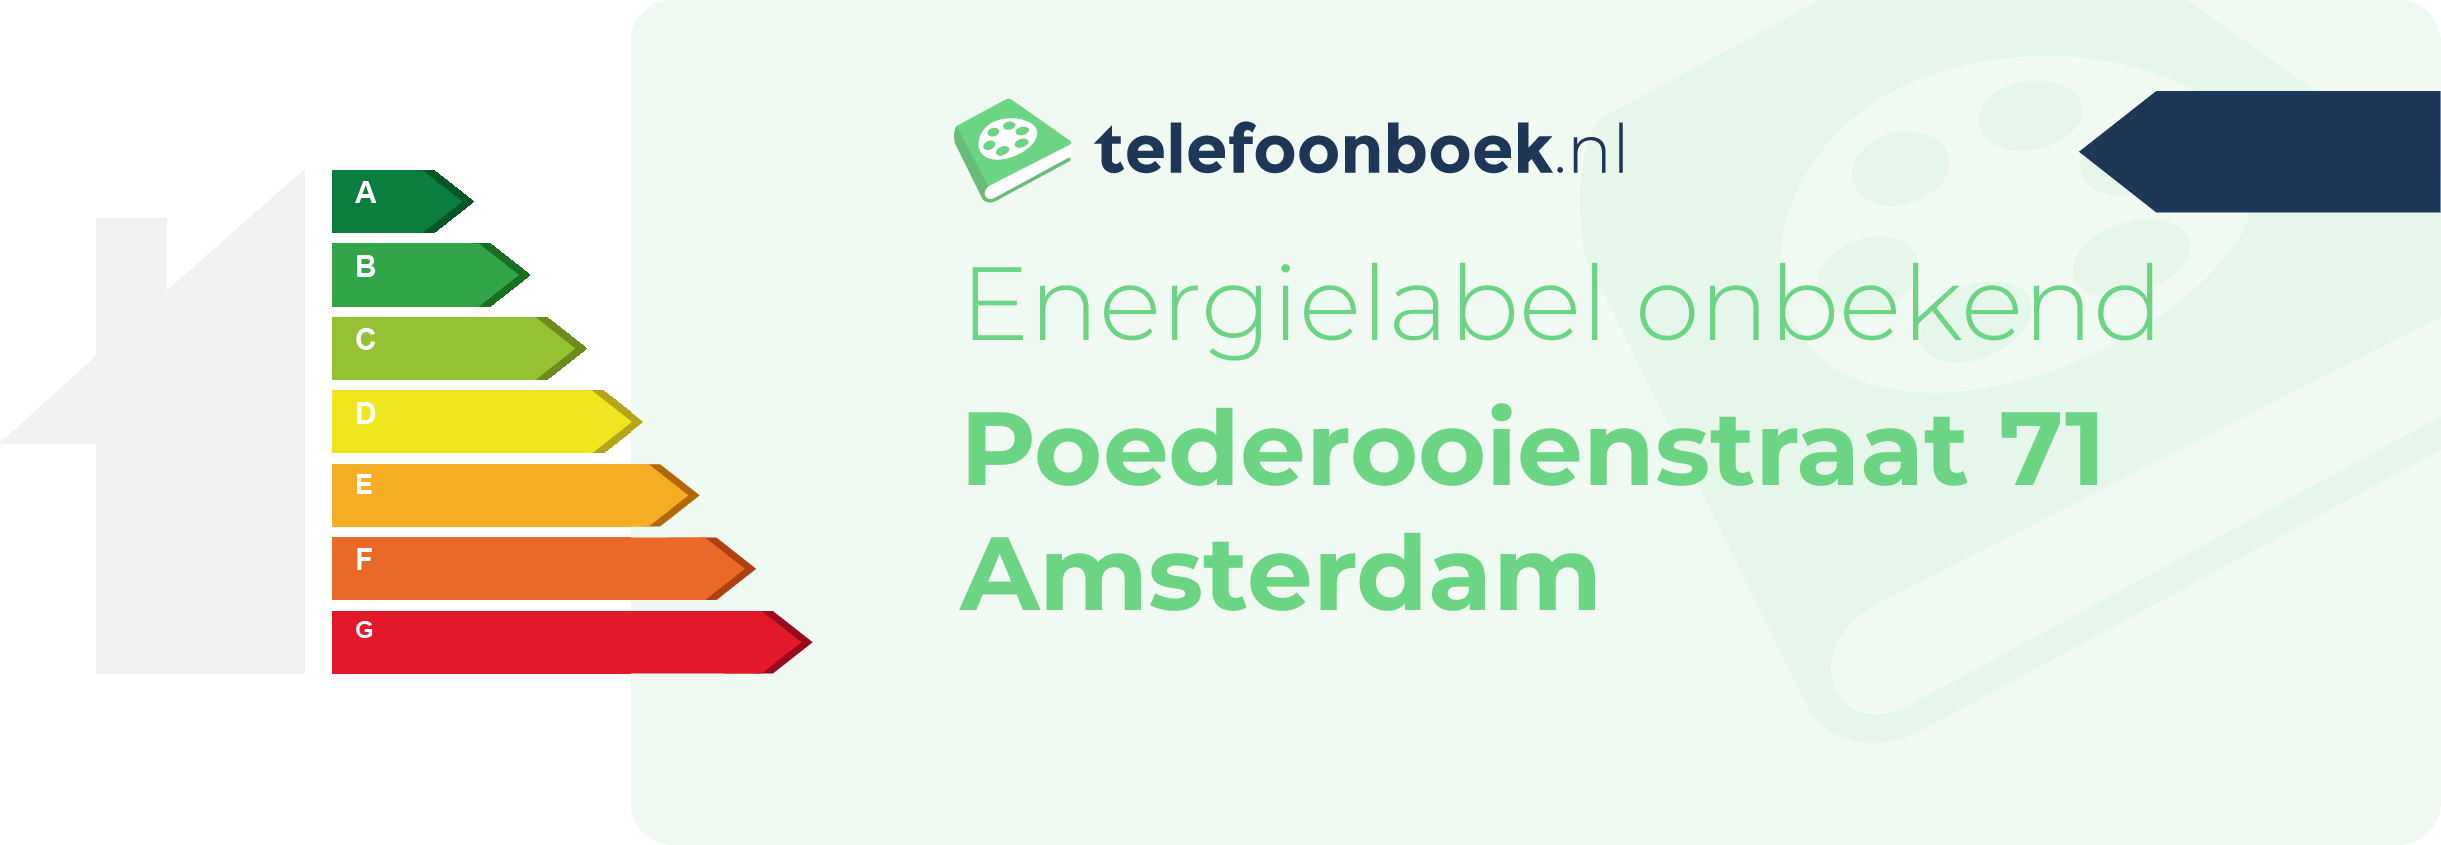 Energielabel Poederooienstraat 71 Amsterdam